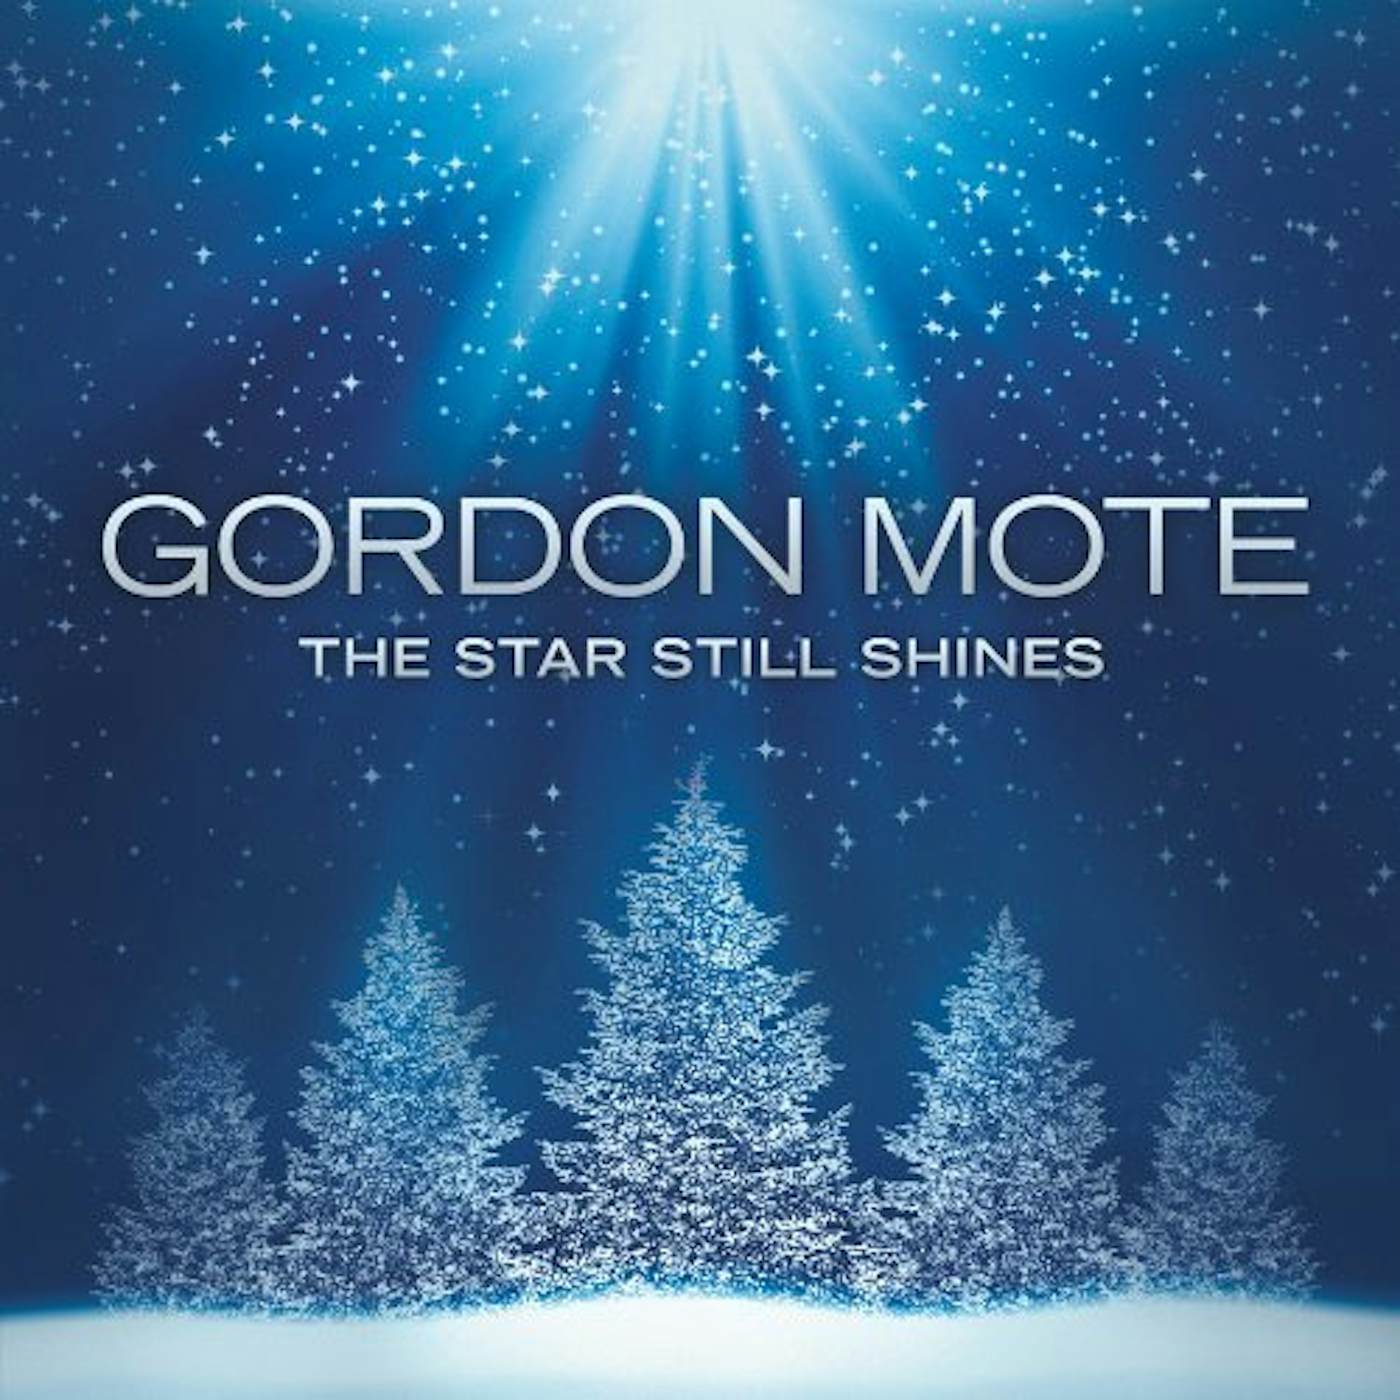 Gordon Mote STAR STILL SHINES CD